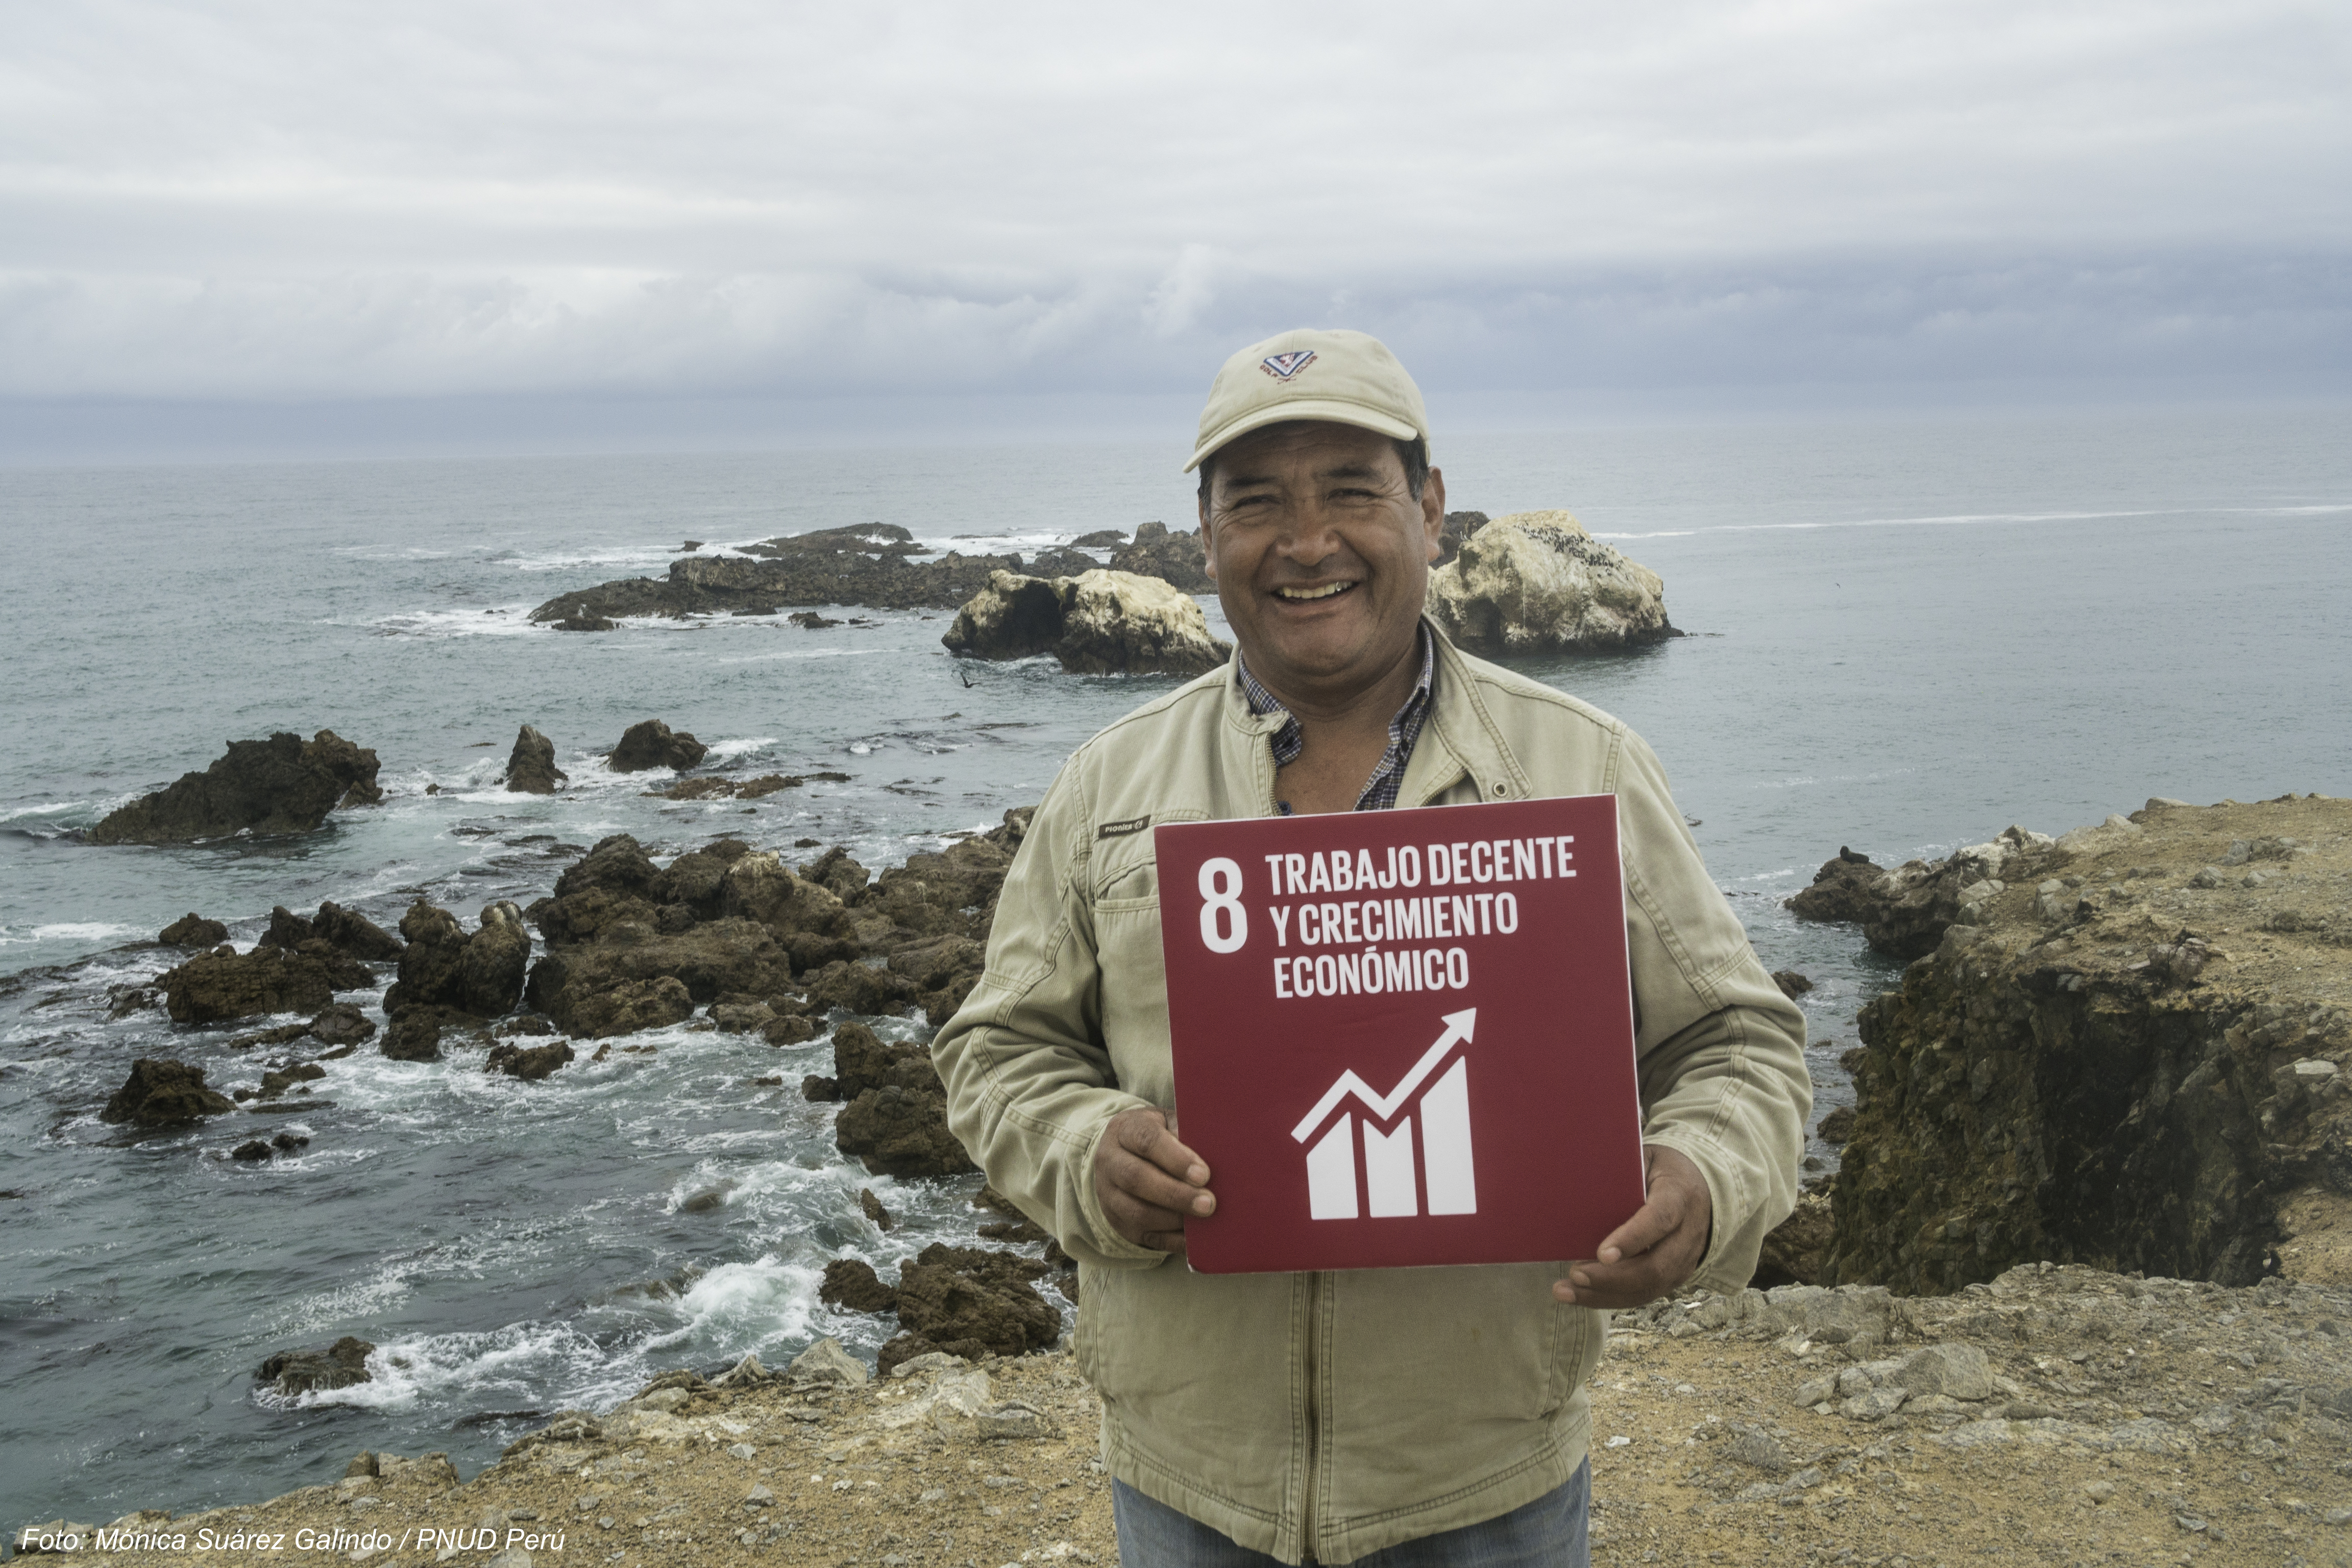 Recolector de algas en Marcona, con cartel de ODS 8: Trabajo decente y crecimiento económico